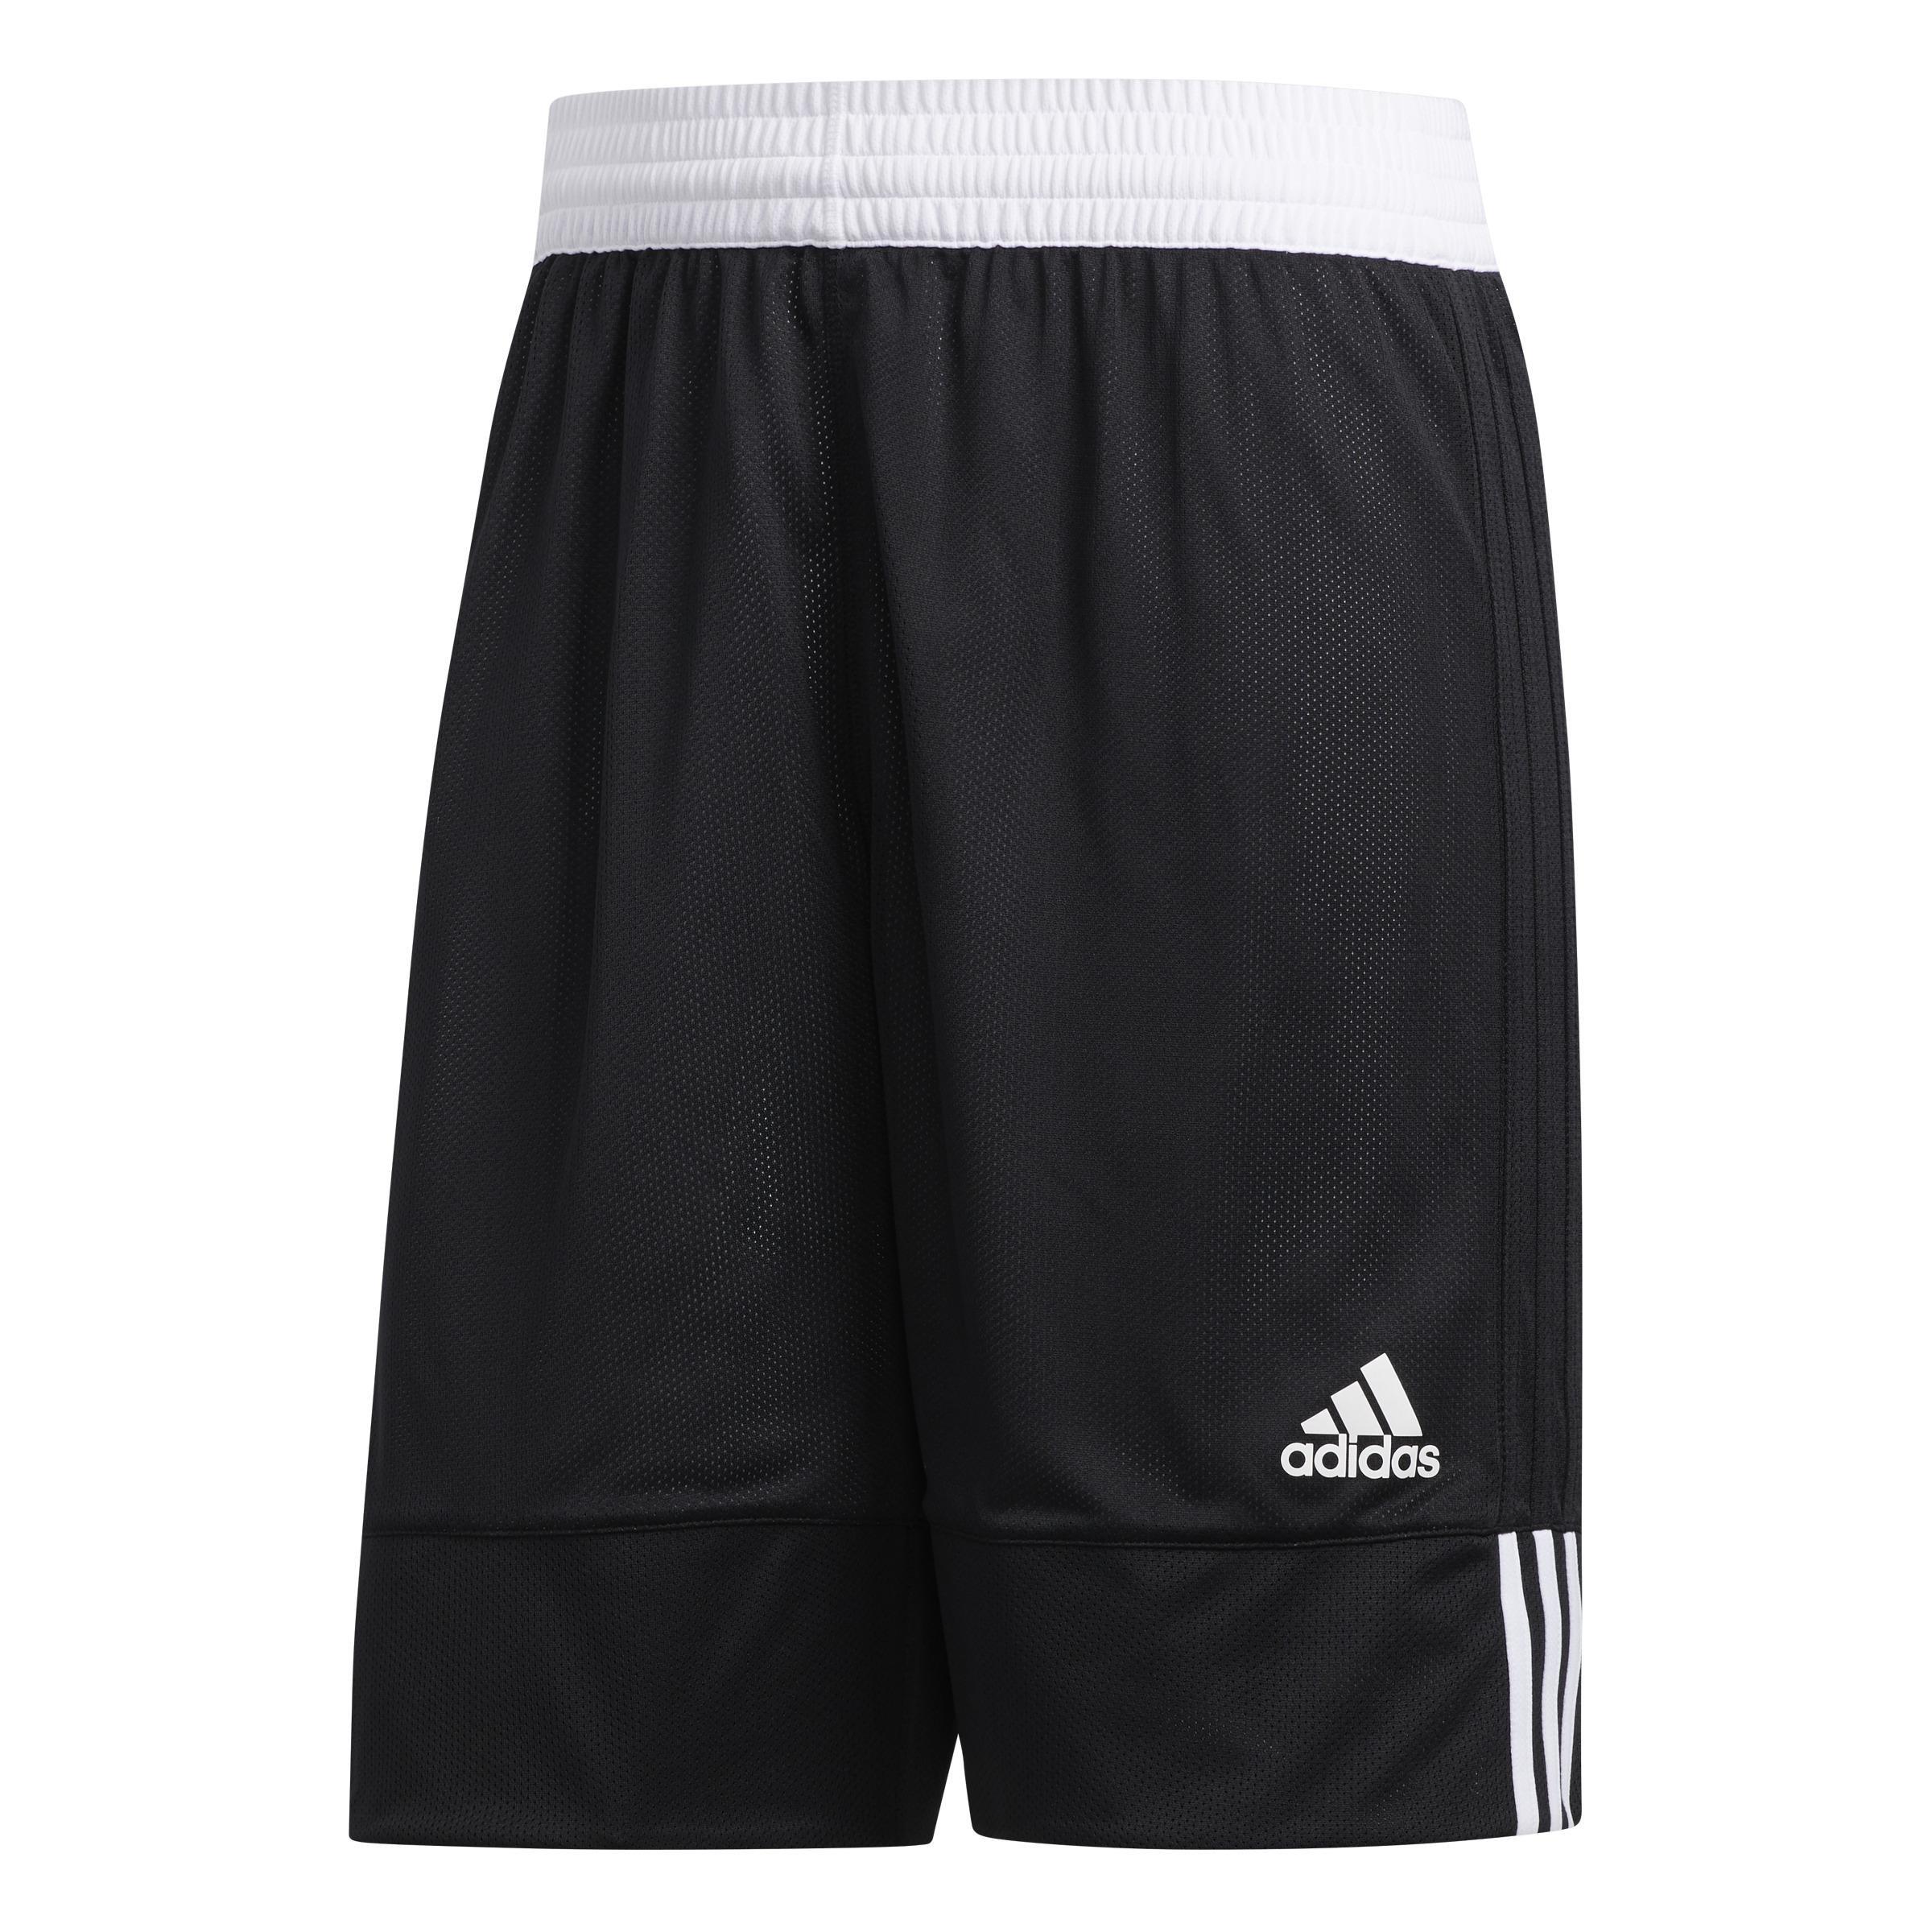 adidas - Men 3G Speed Reversible Shorts, Black